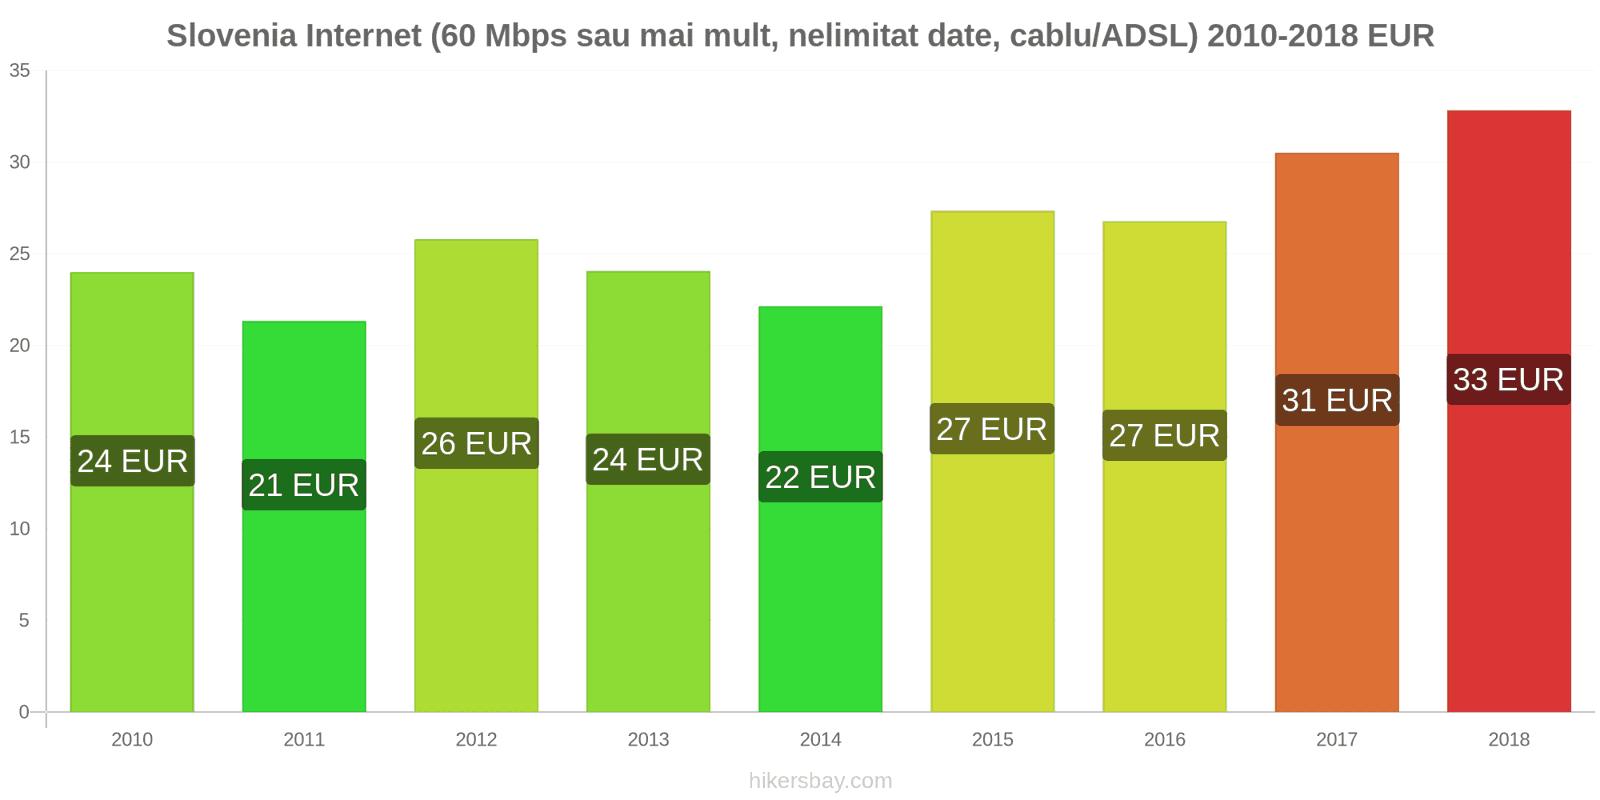 Slovenia schimbări de prețuri Internet (60 Mbps sau mai mult, date nelimitate, cablu/ADSL) hikersbay.com